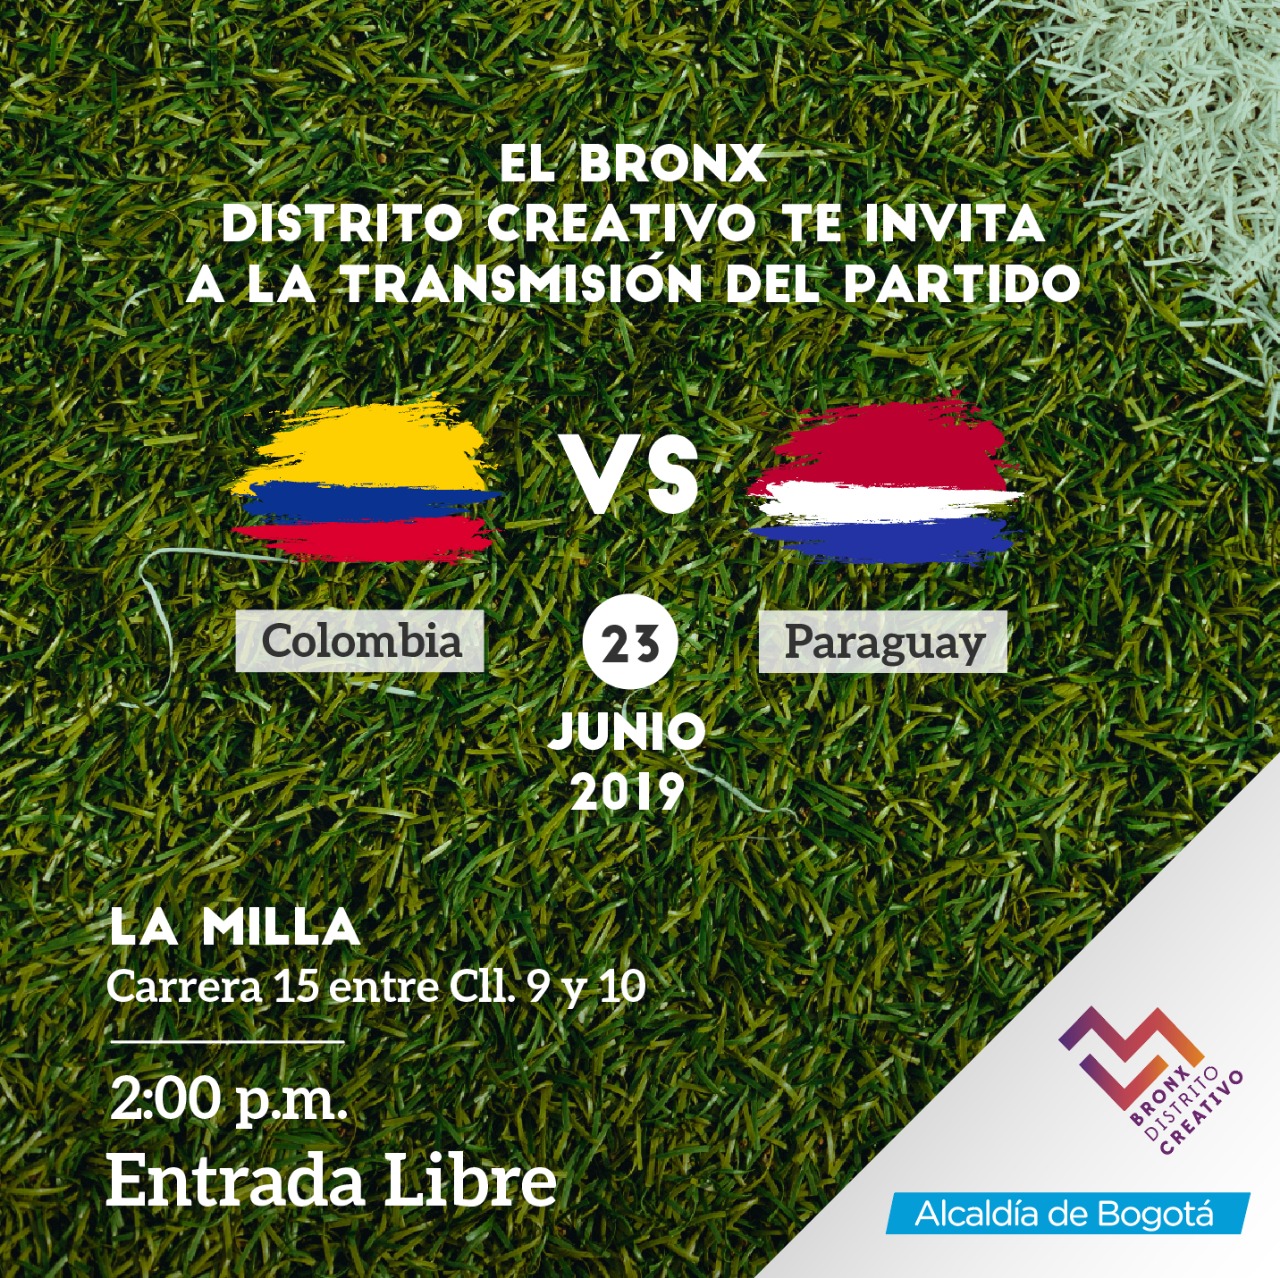 Poster de la invitación del partido colombia versus paraguay en el Bronx 